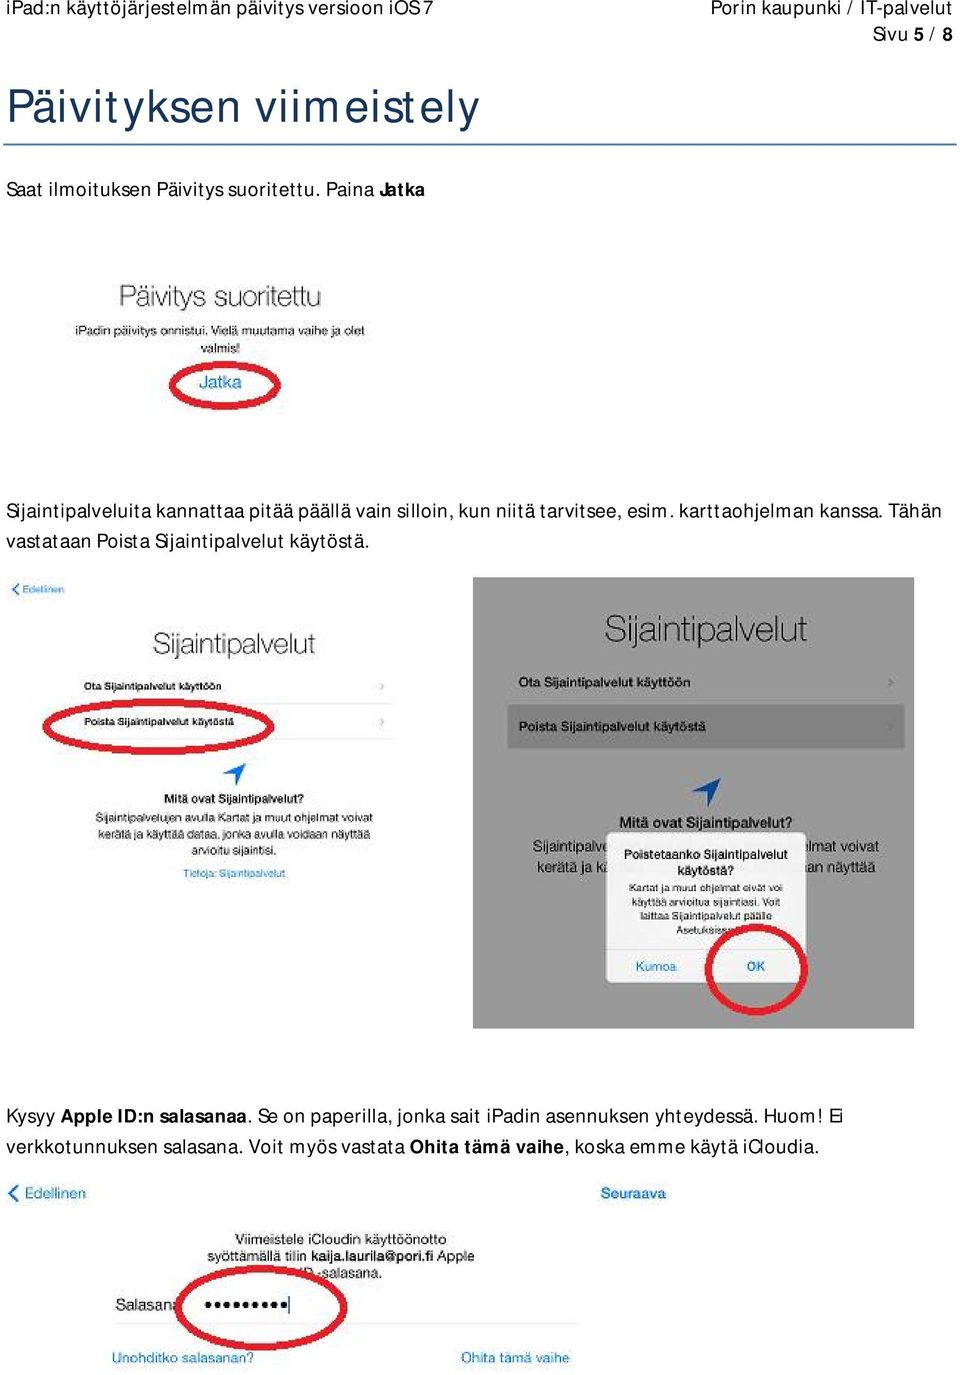 karttaohjelman kanssa. Tähän vastataan Poista Sijaintipalvelut käytöstä. Kysyy Apple ID:n salasanaa.